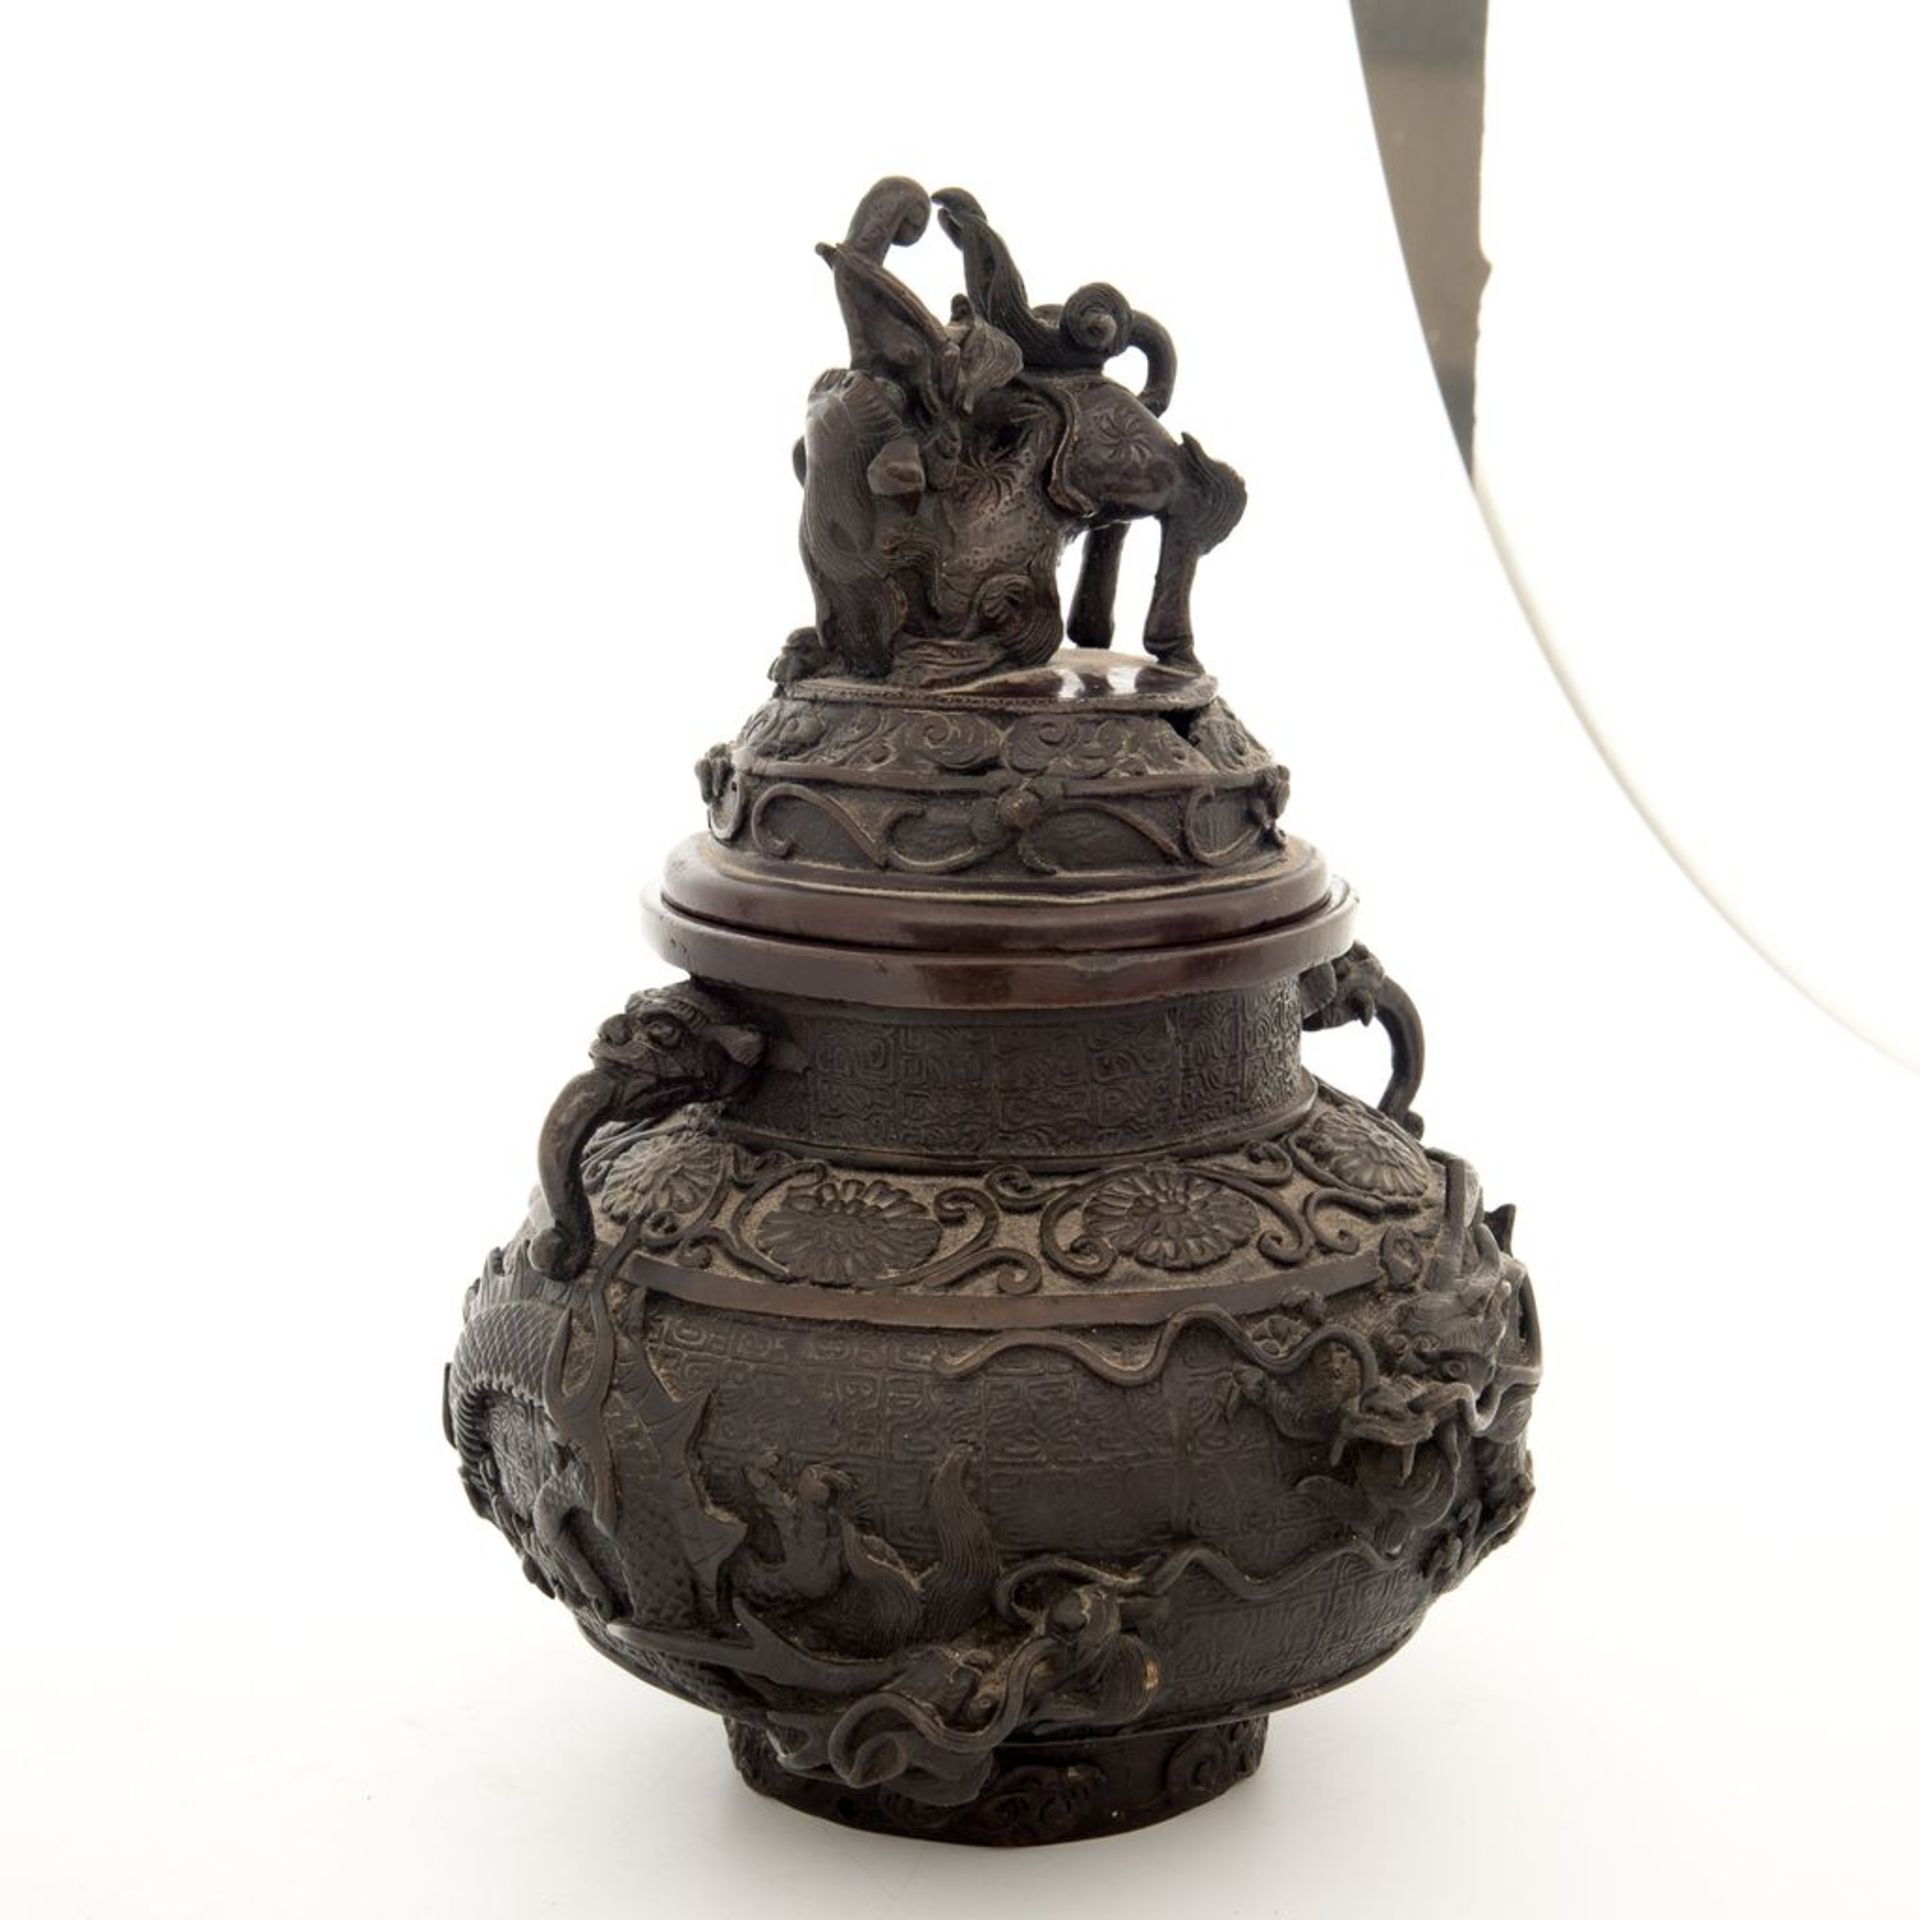 Weihrauchgefäß, China 19. Jh.Bronze, dunkel patiniert. Kugeliger Korpus mit großem Drachen und